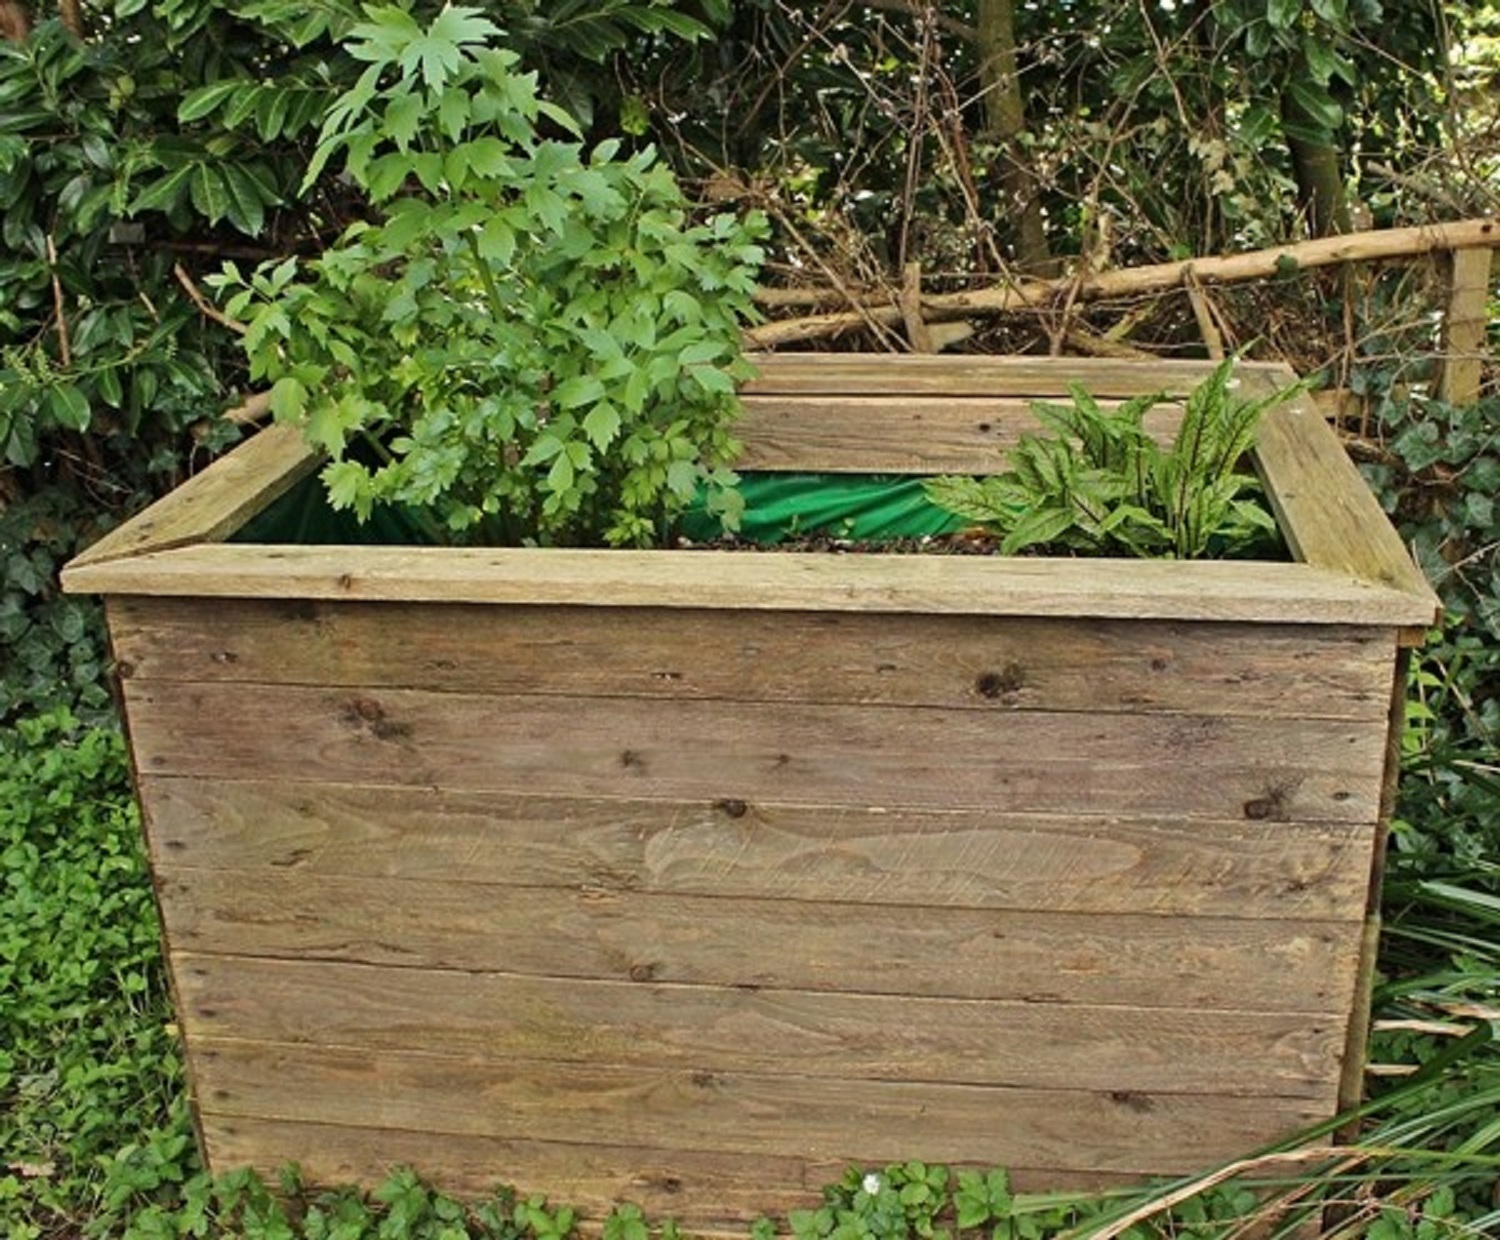 Kompostieren im eigenen Garten:  Abfall in wertvollen Humus verwandeln